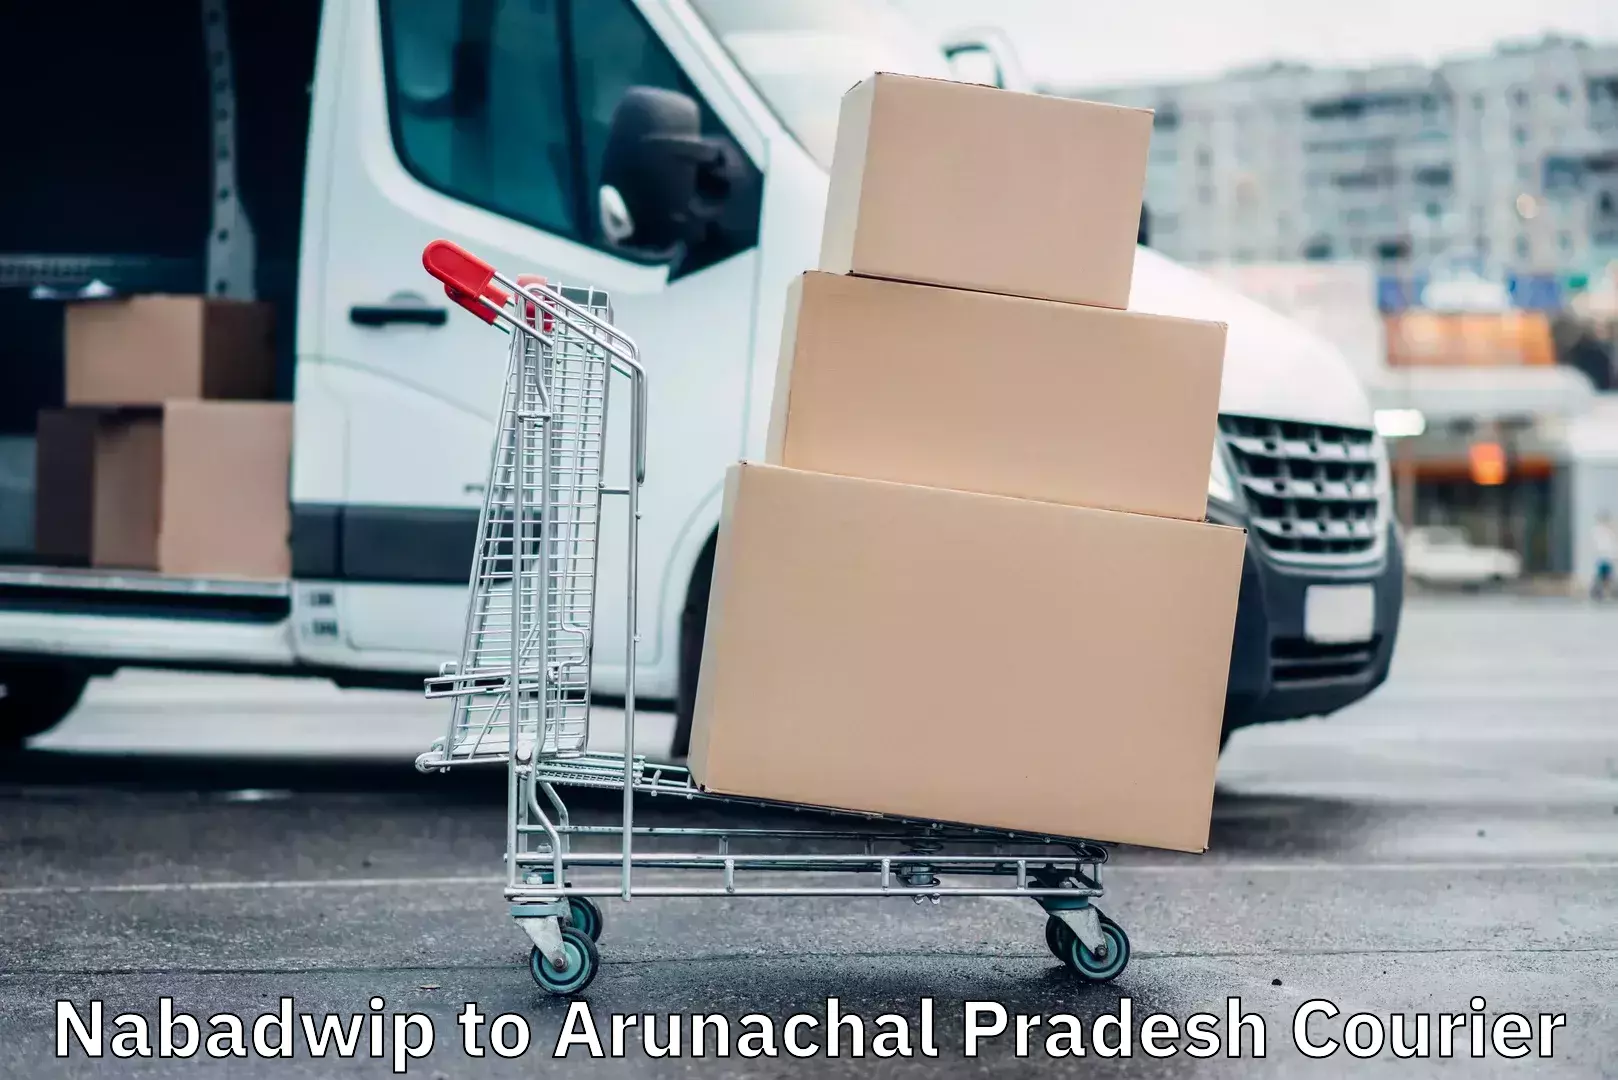 Comprehensive freight services Nabadwip to Arunachal Pradesh